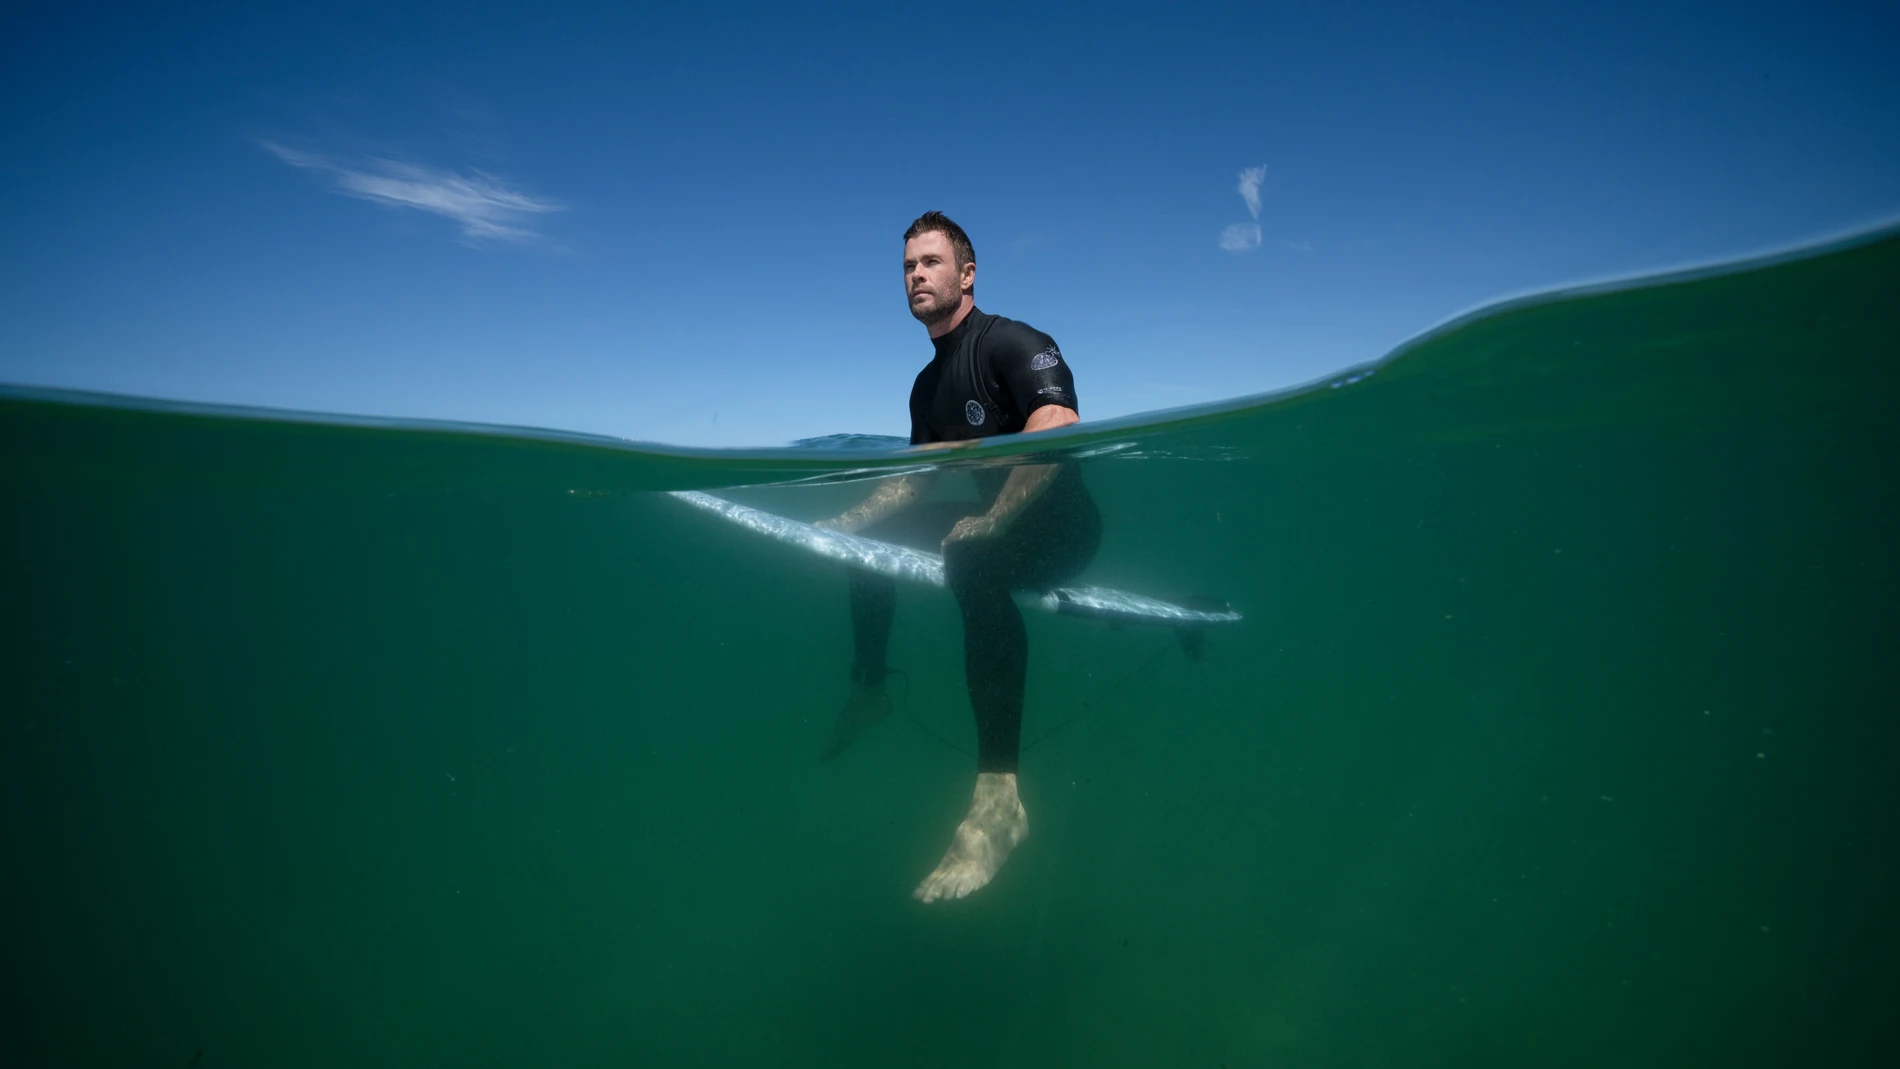 Chris Hemsworth surfeando en Australia durante el documental